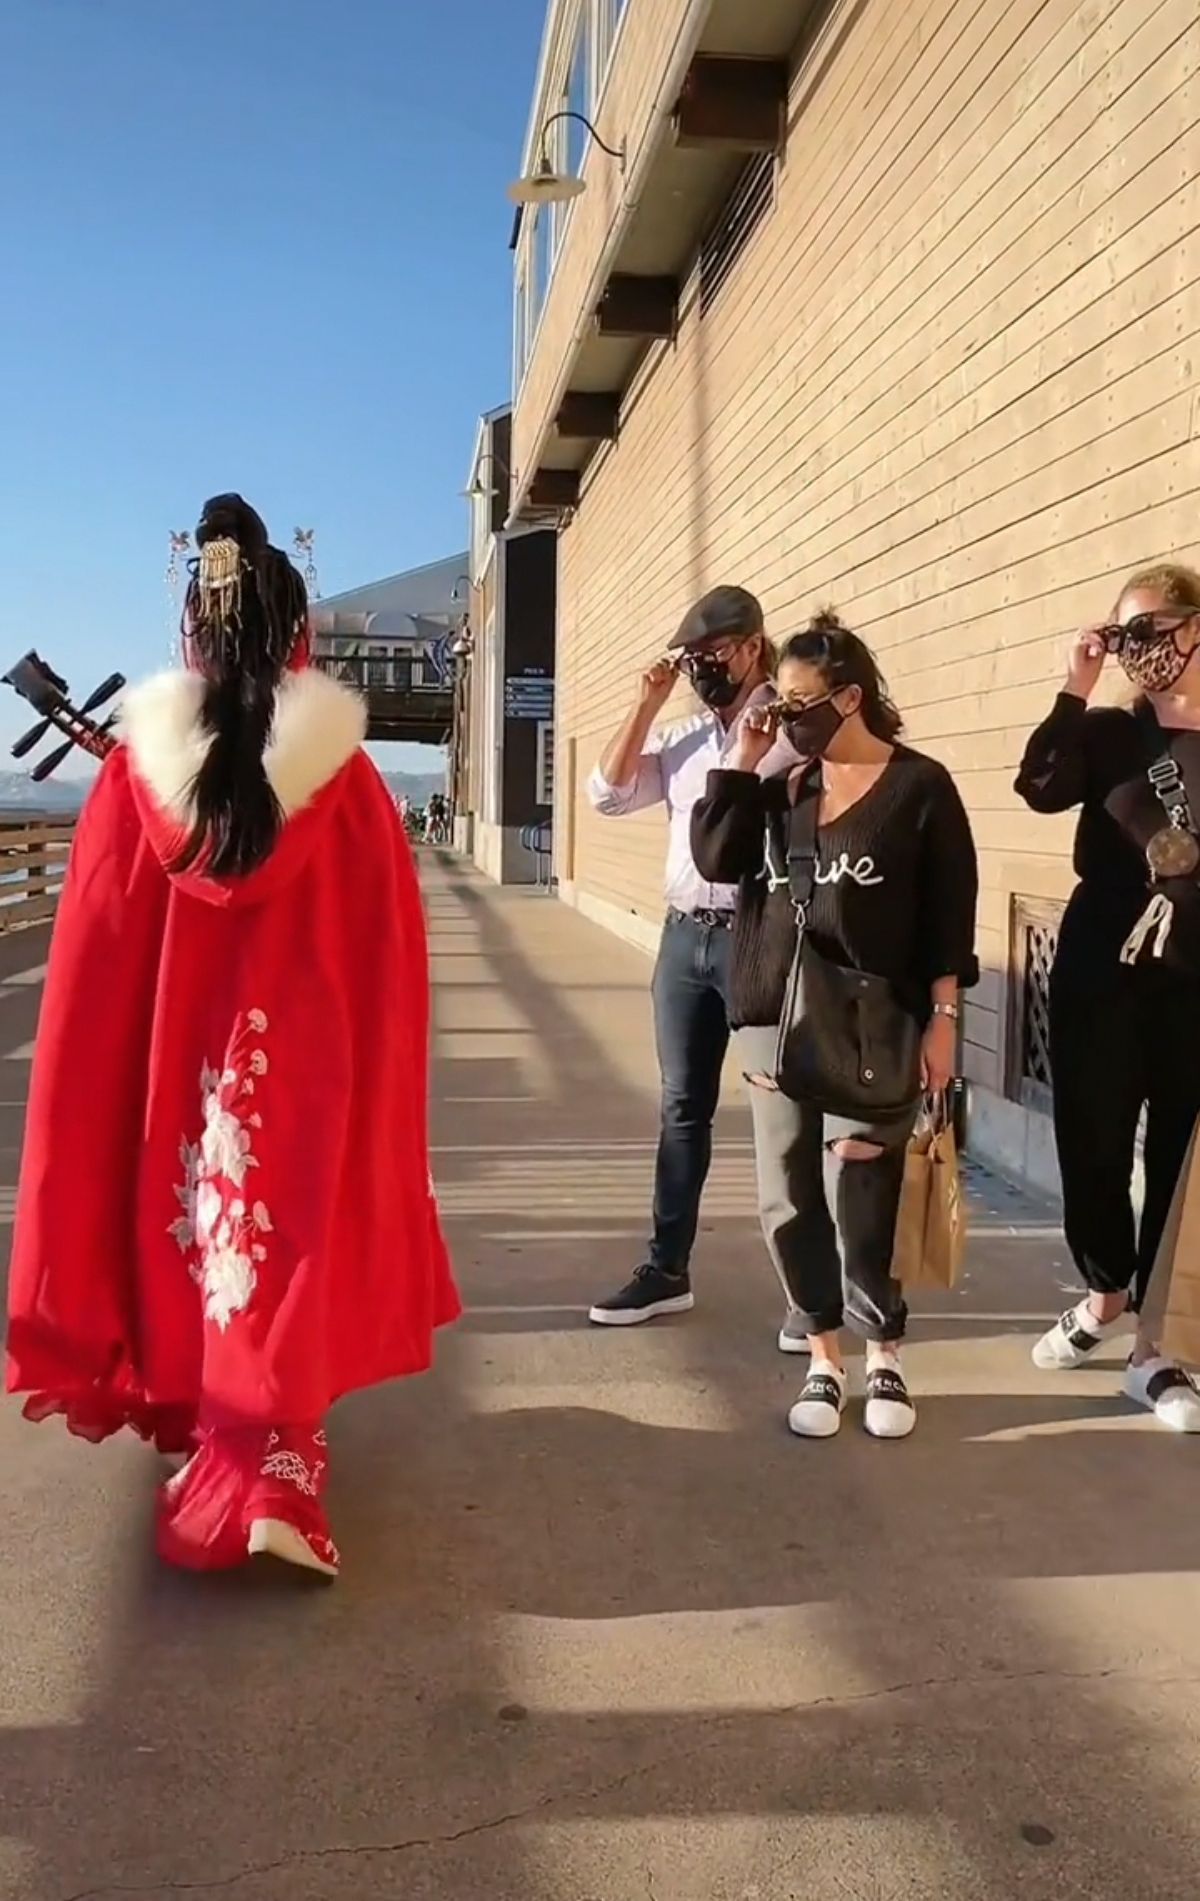 外国人也被惊艳了!中国姑娘穿汉服走在国外街头,老外的表情亮了